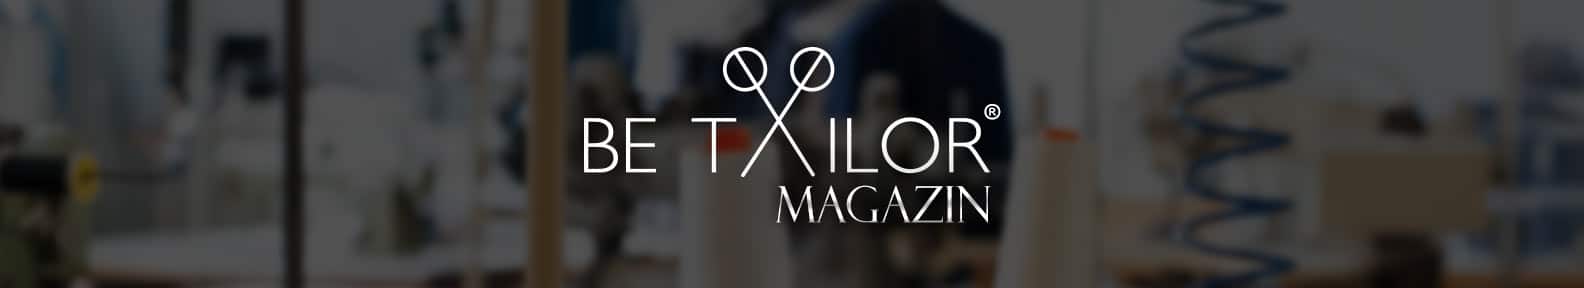 BeTailor Magazin, Modeblog, Schneiderblog